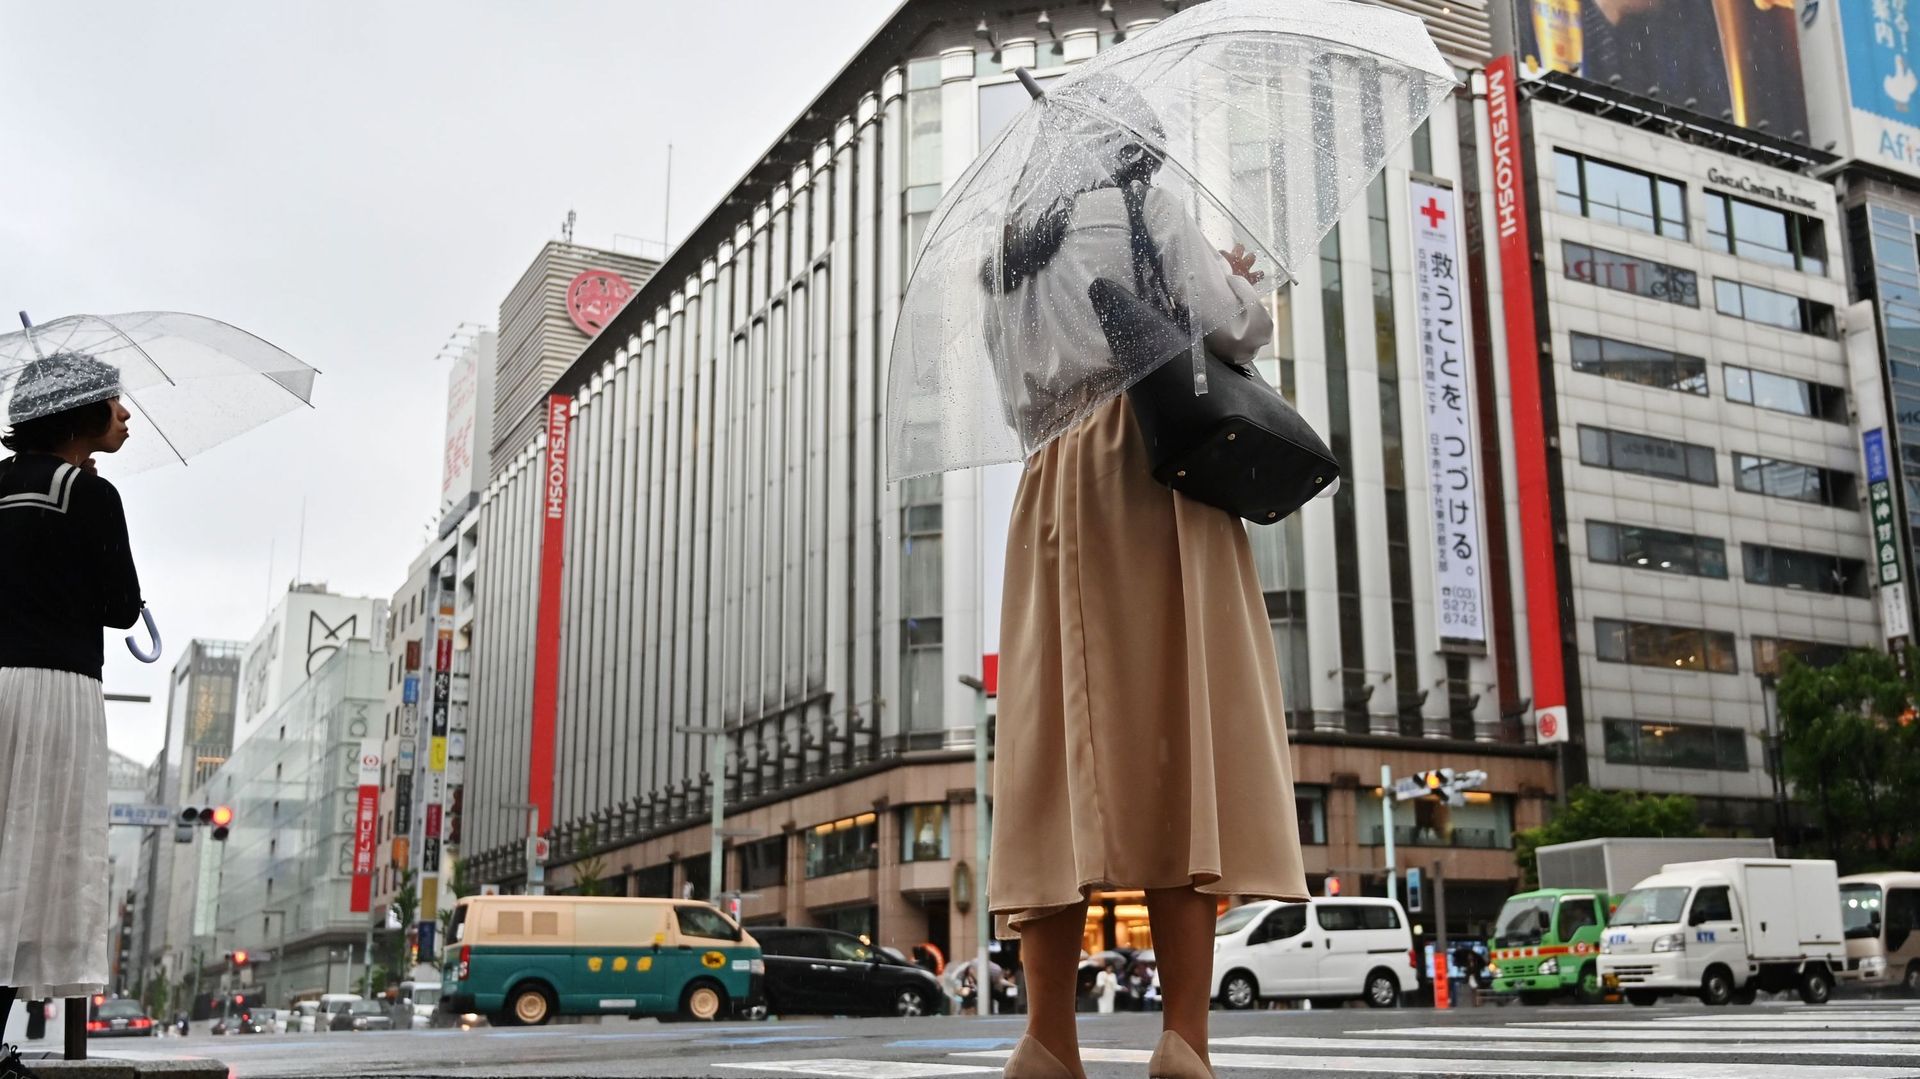 Japon: la condition de la femme, un sujet toujours sensible